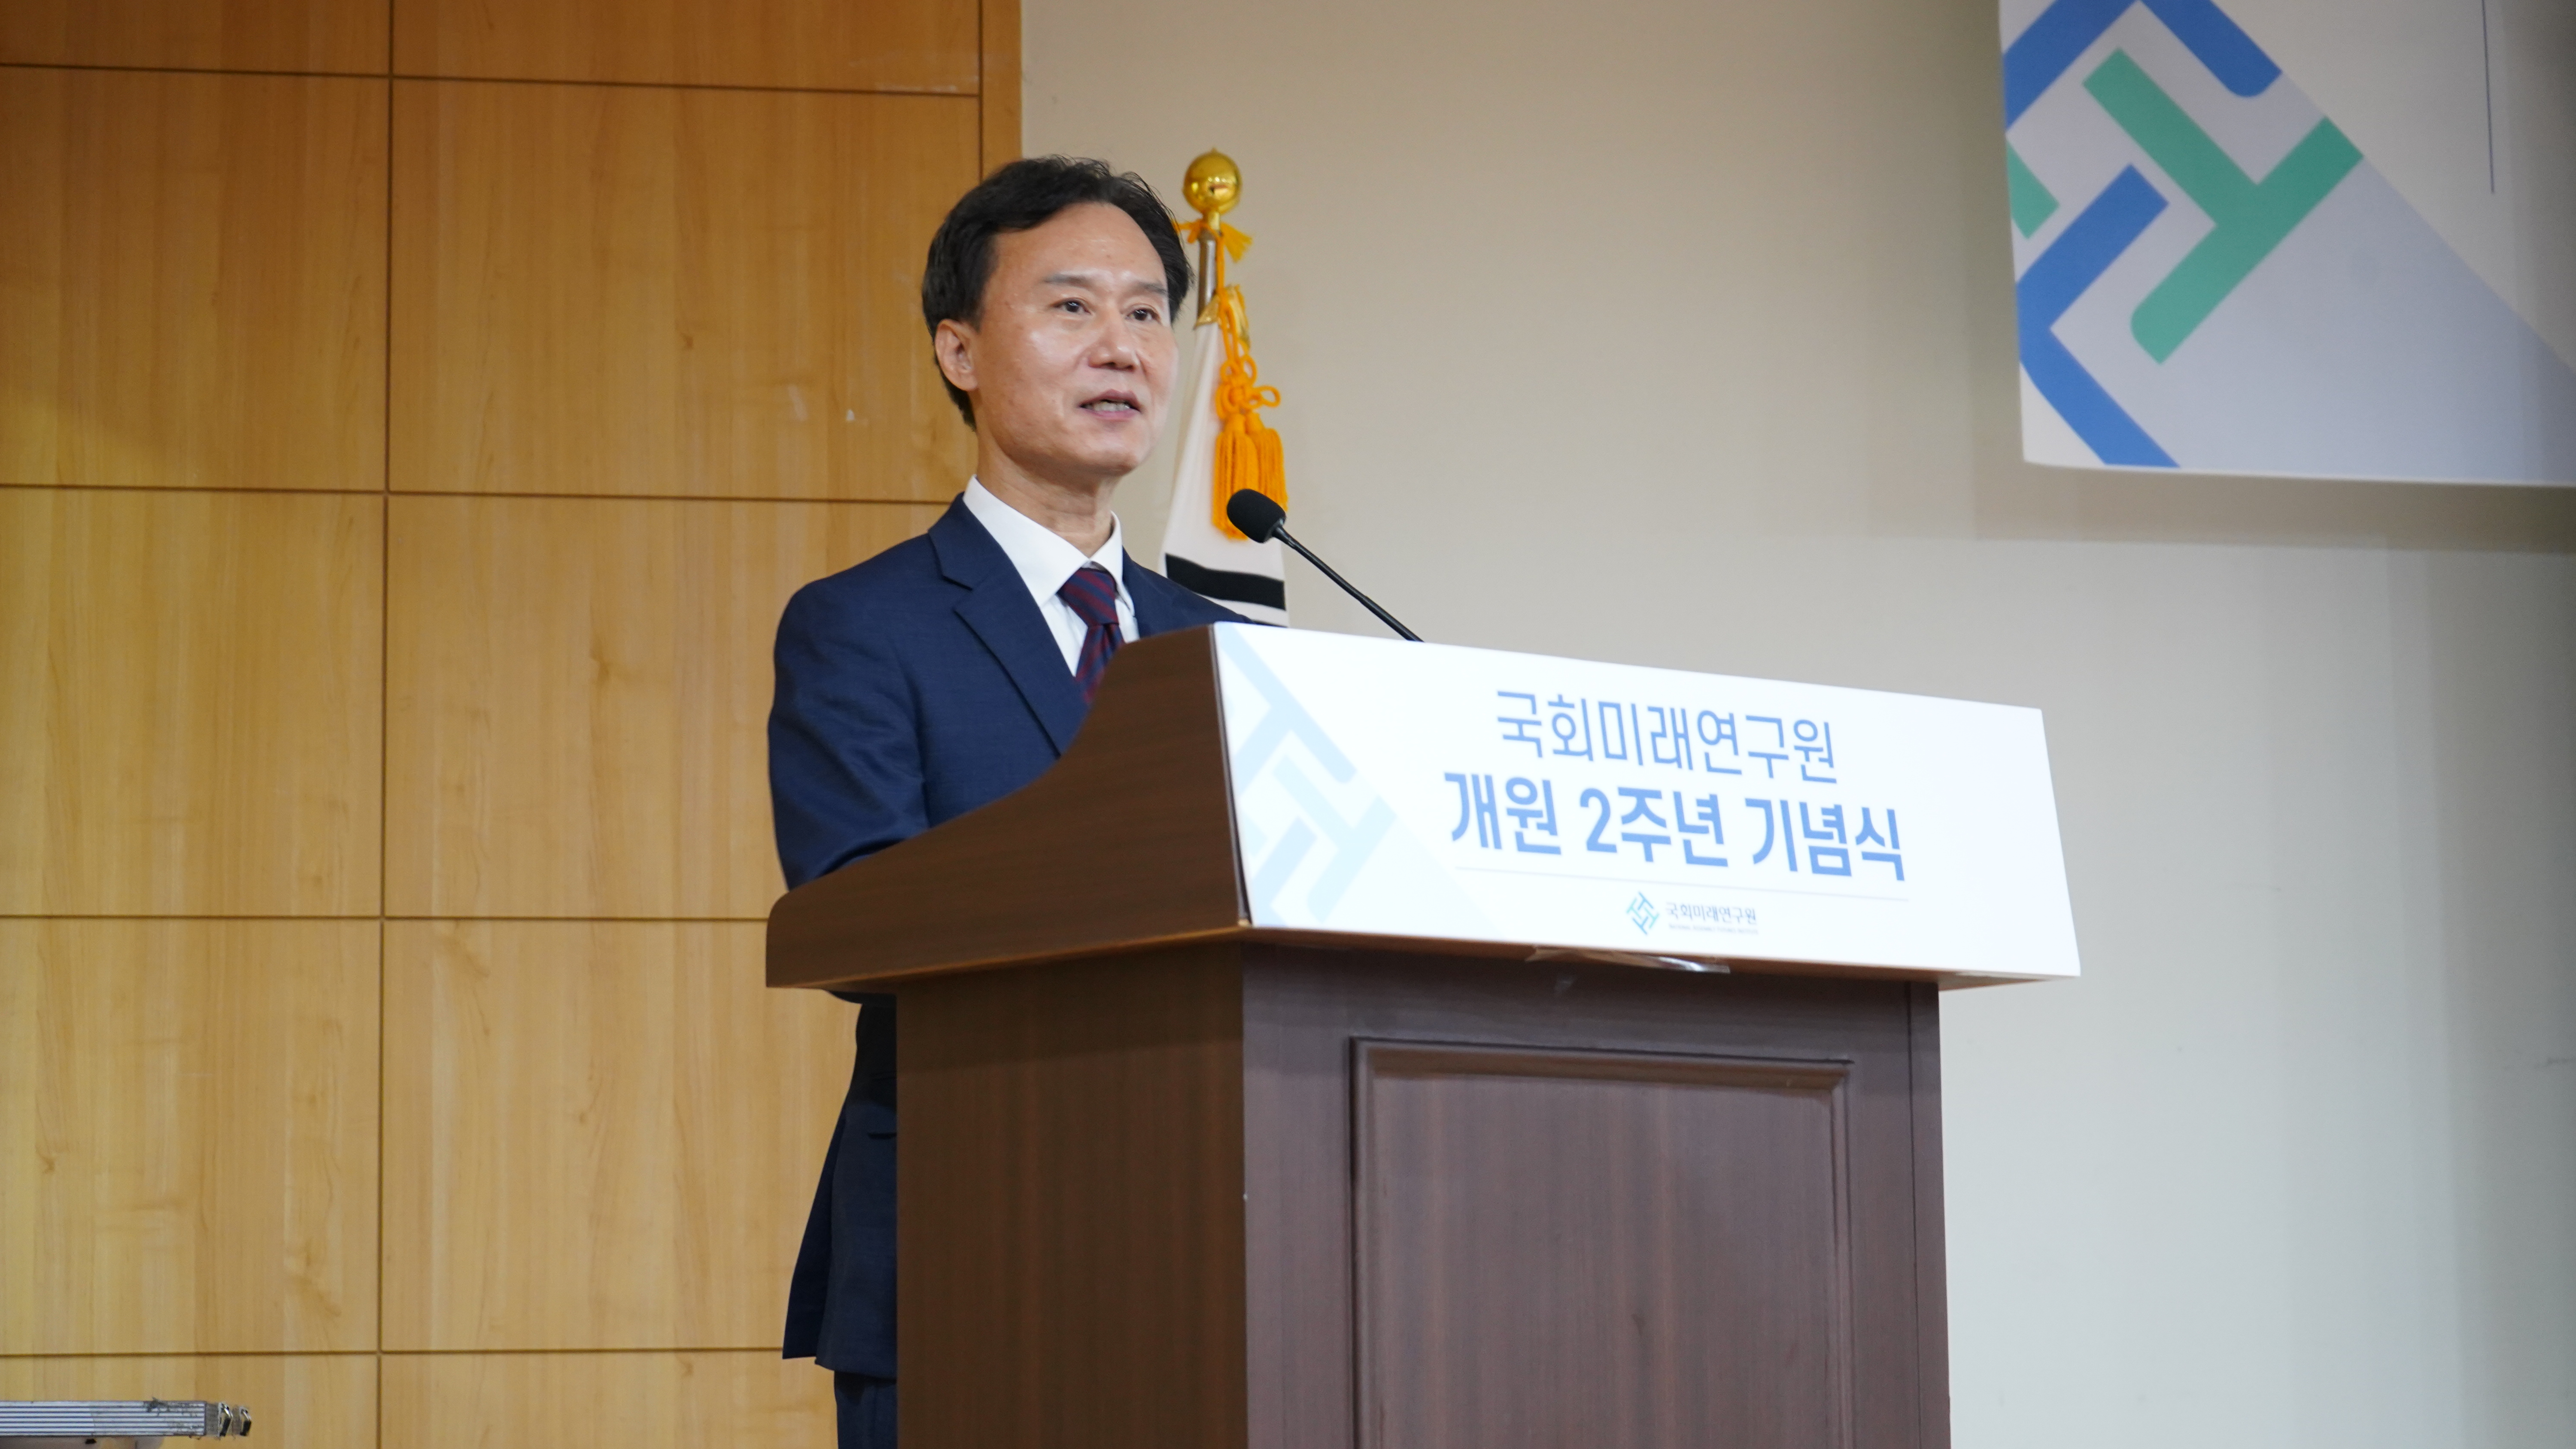 [05.26] 국회미래연구원 개원 2주년 기념식 개최4